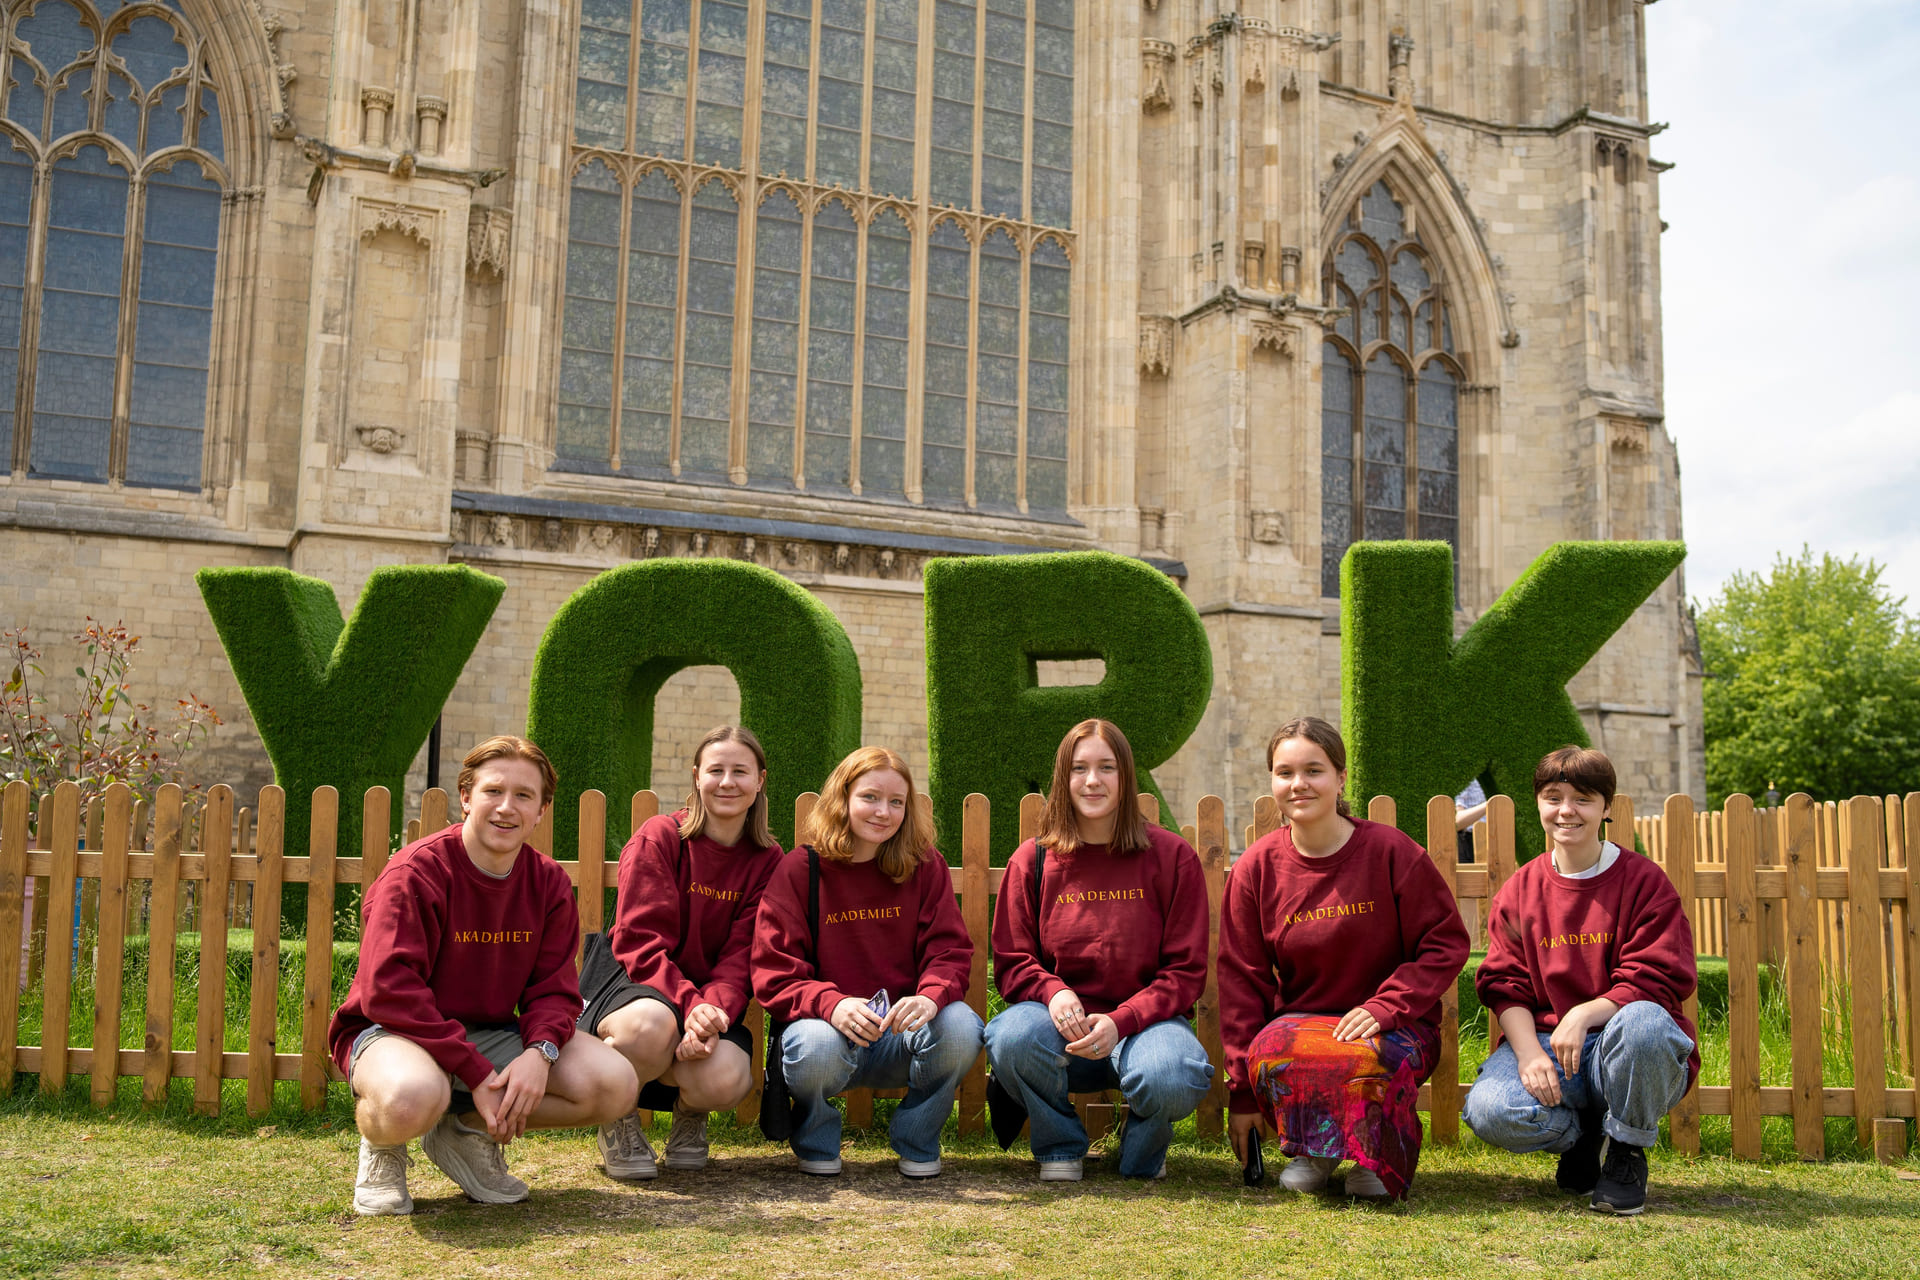 Elever poserer utenfor store bokstaver "YORK" i England.